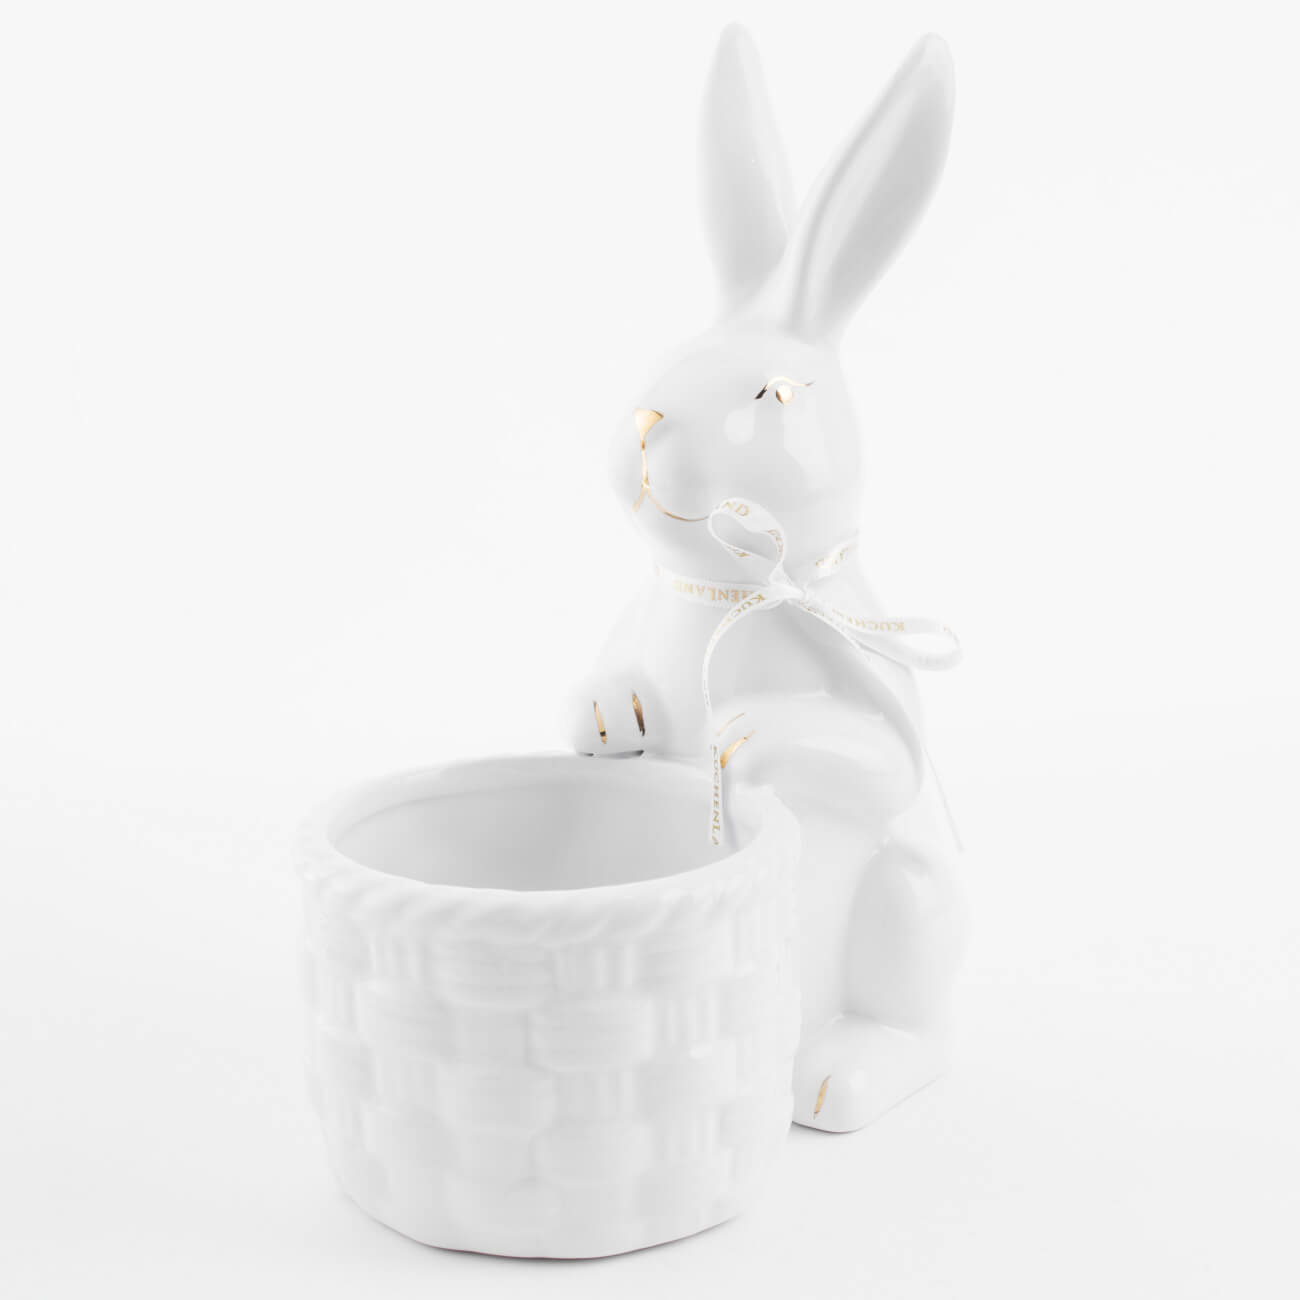 Конфетница, 18x23 см, керамика, бело-золотистая, Кролик с плетенной корзиной, Easter gold конфетница 18x14 см с ручкой керамика молочная кролики в корзине natural easter